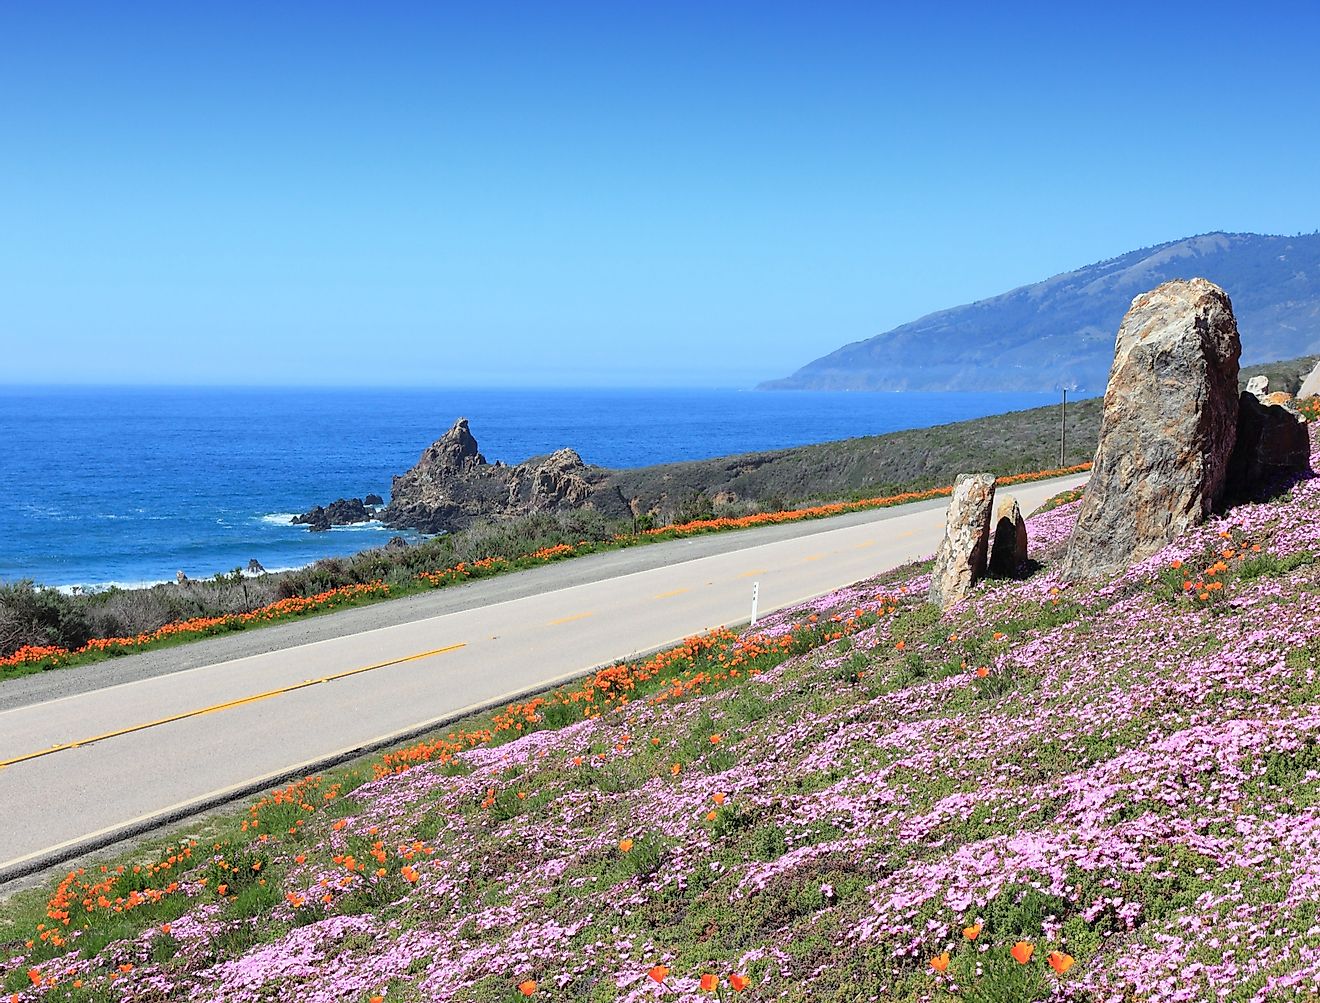 California, United States - Pacific Coast Highway scenic drive. Image credit Tupungato via shutterstock